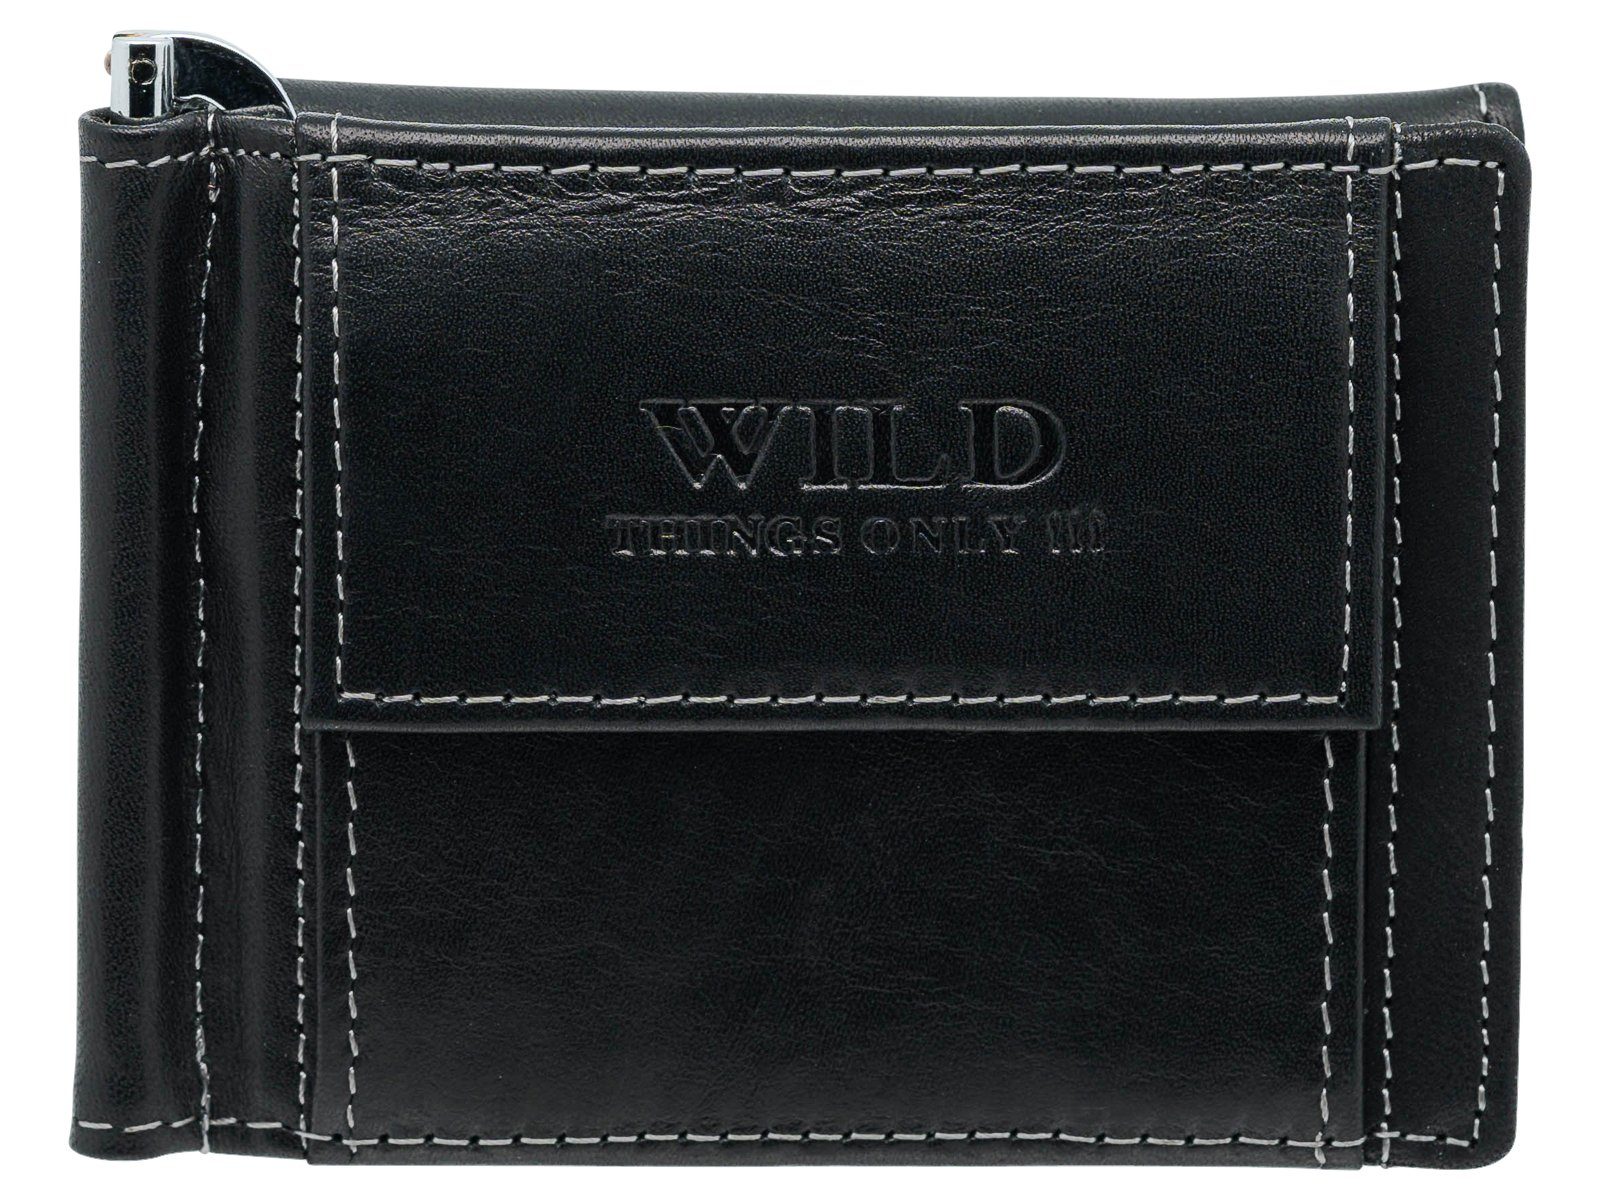 Wild Things Only !!! Geldbörse mit Dollarclip und Münzfach, Geldscheinklammer schwarz